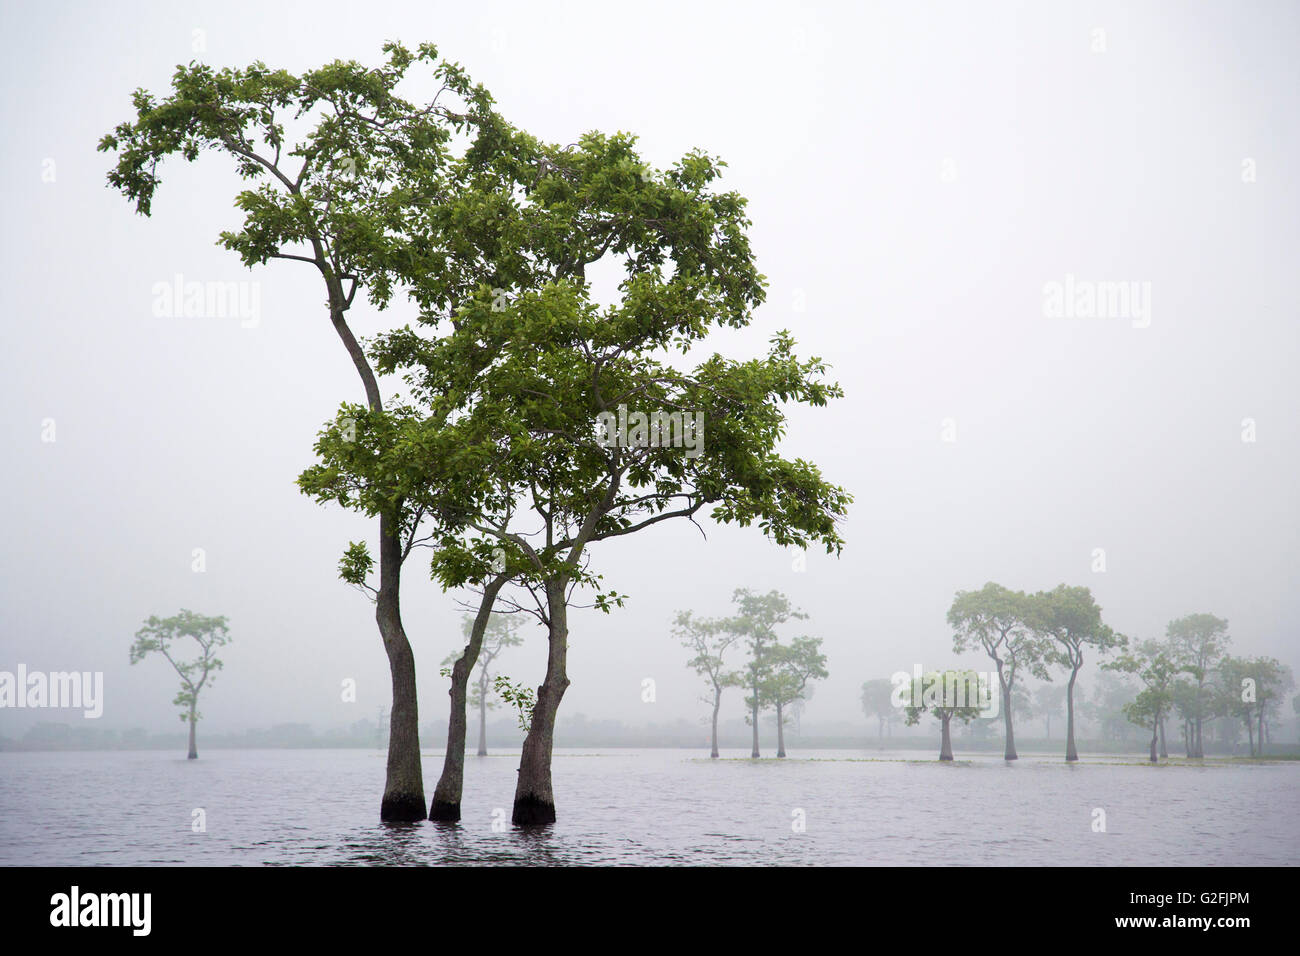 Tupelo trees (Nyssa aquatica) in morning mist at Miller's Lake in Louisiana Stock Photo